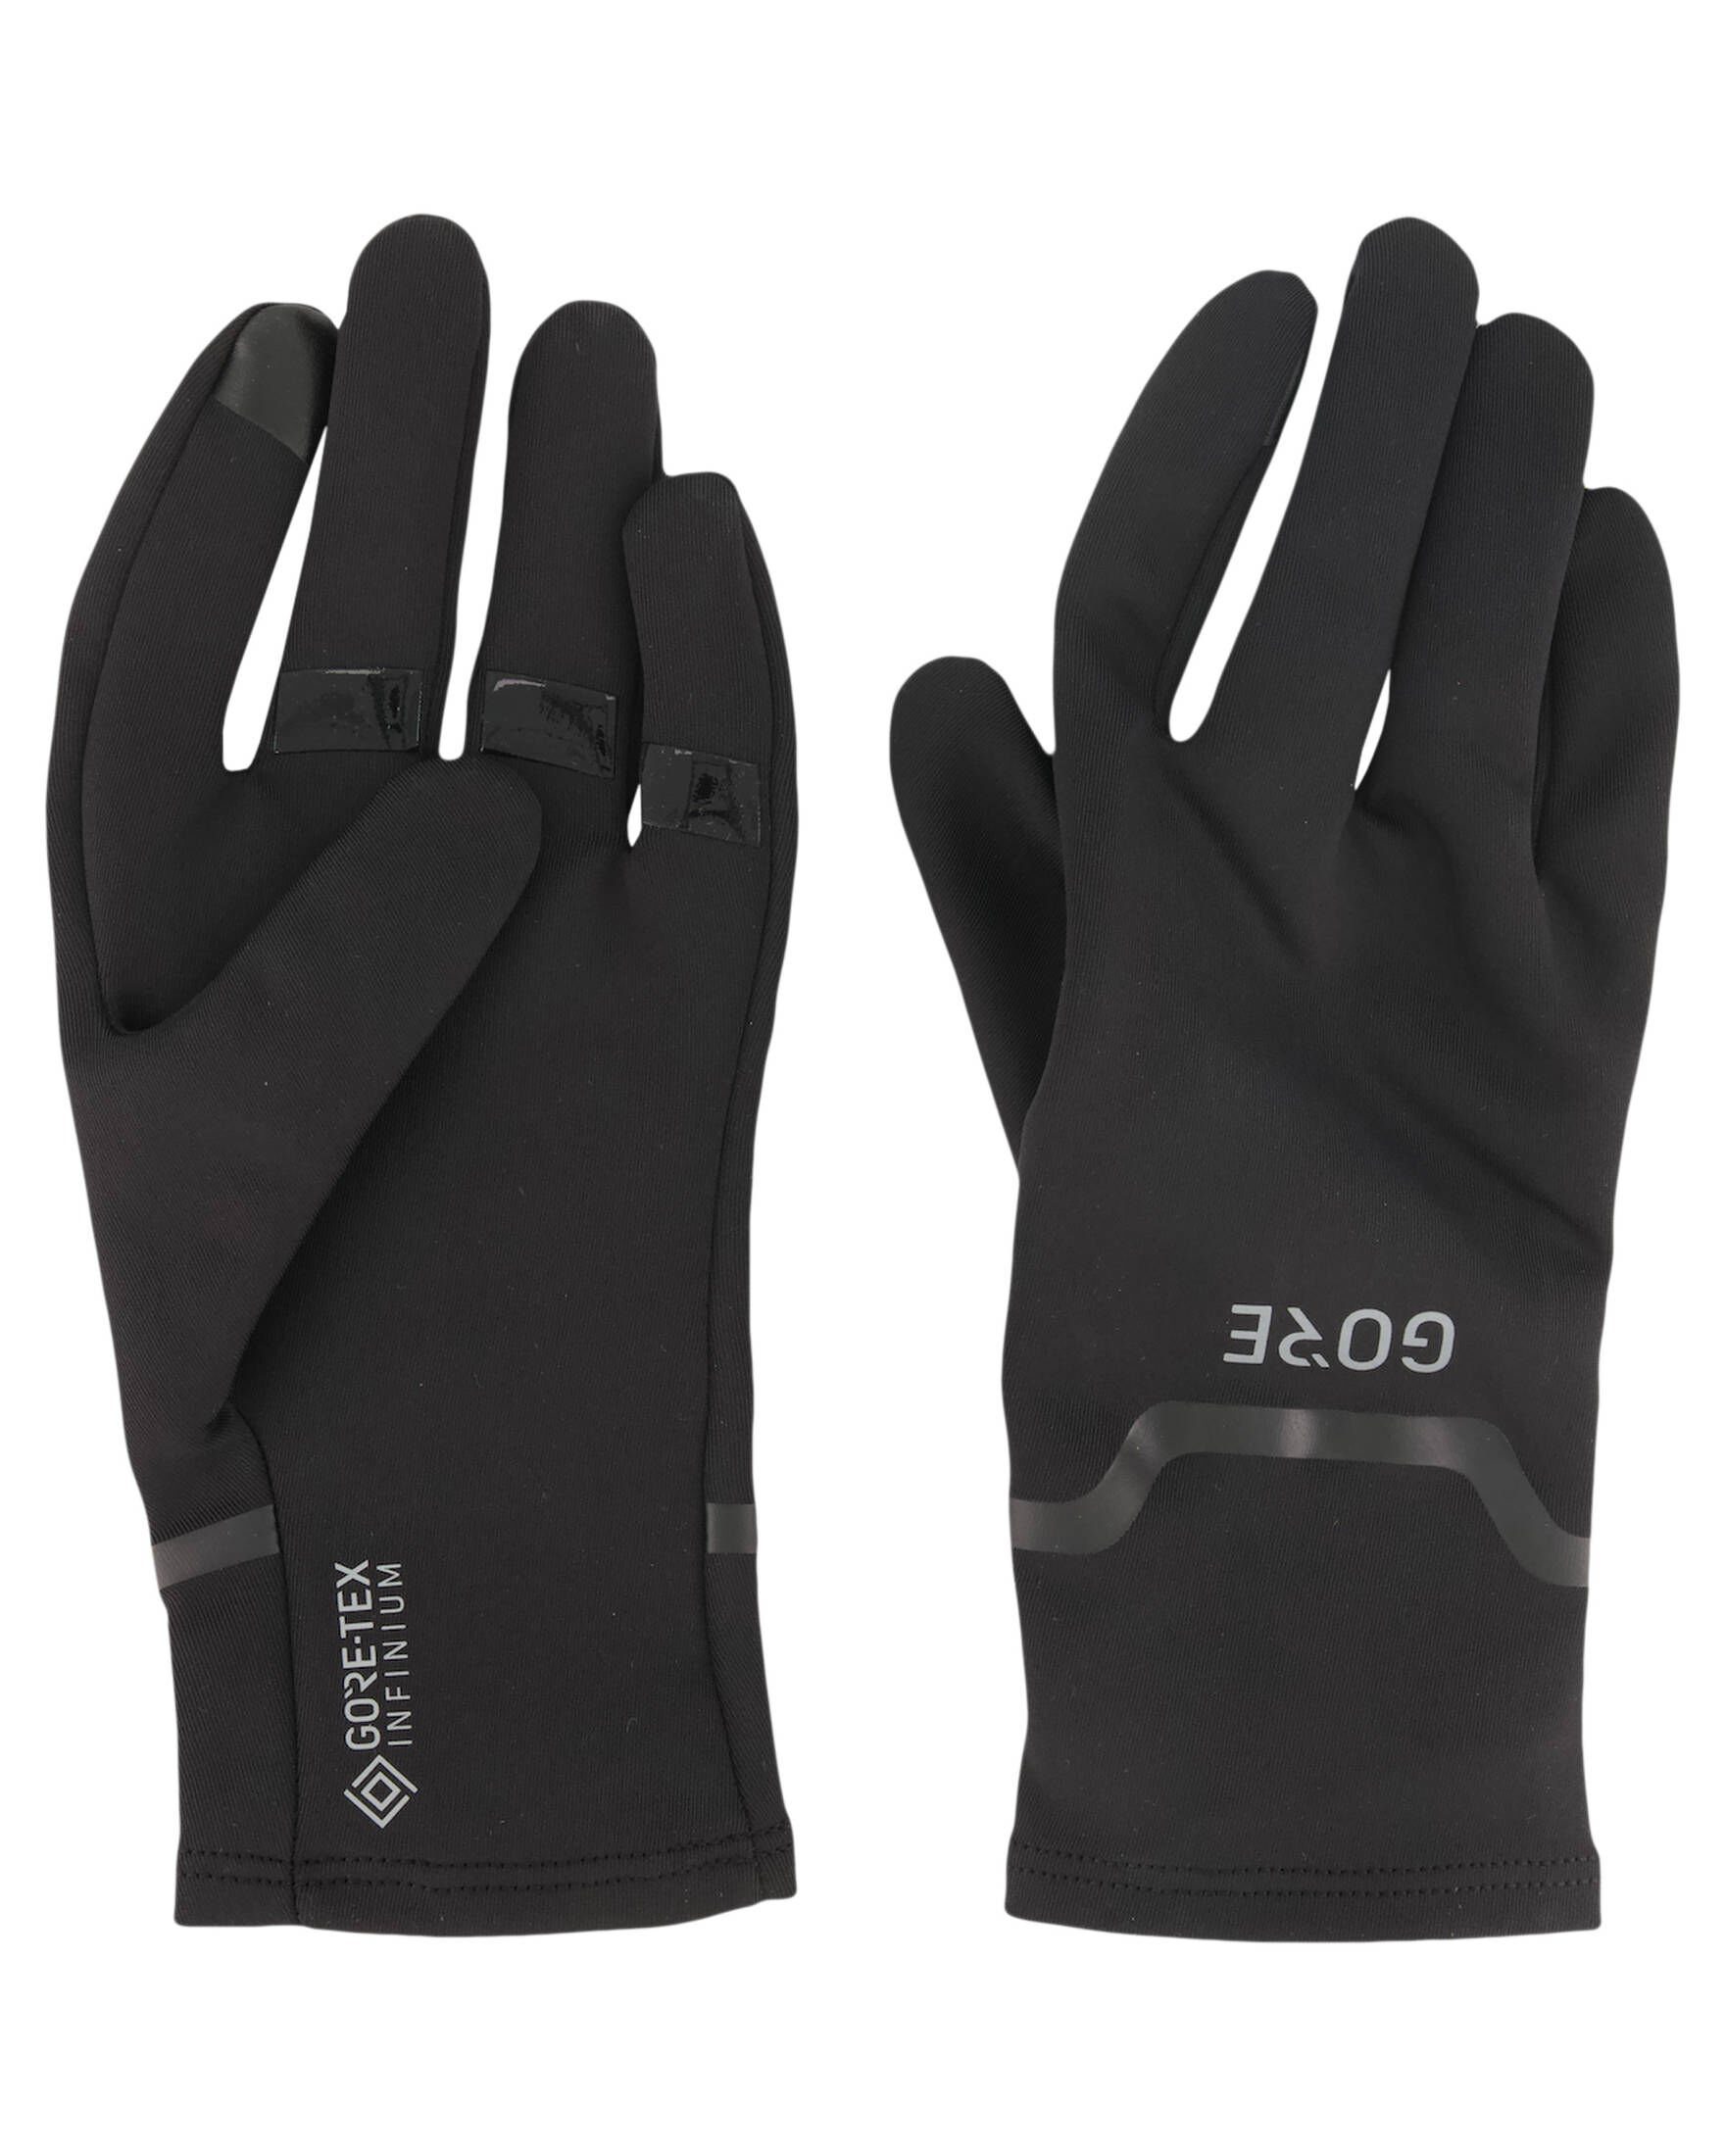 GORE® Laufhandschuhe Herren Wear 9900 und black Damen Handschuhe